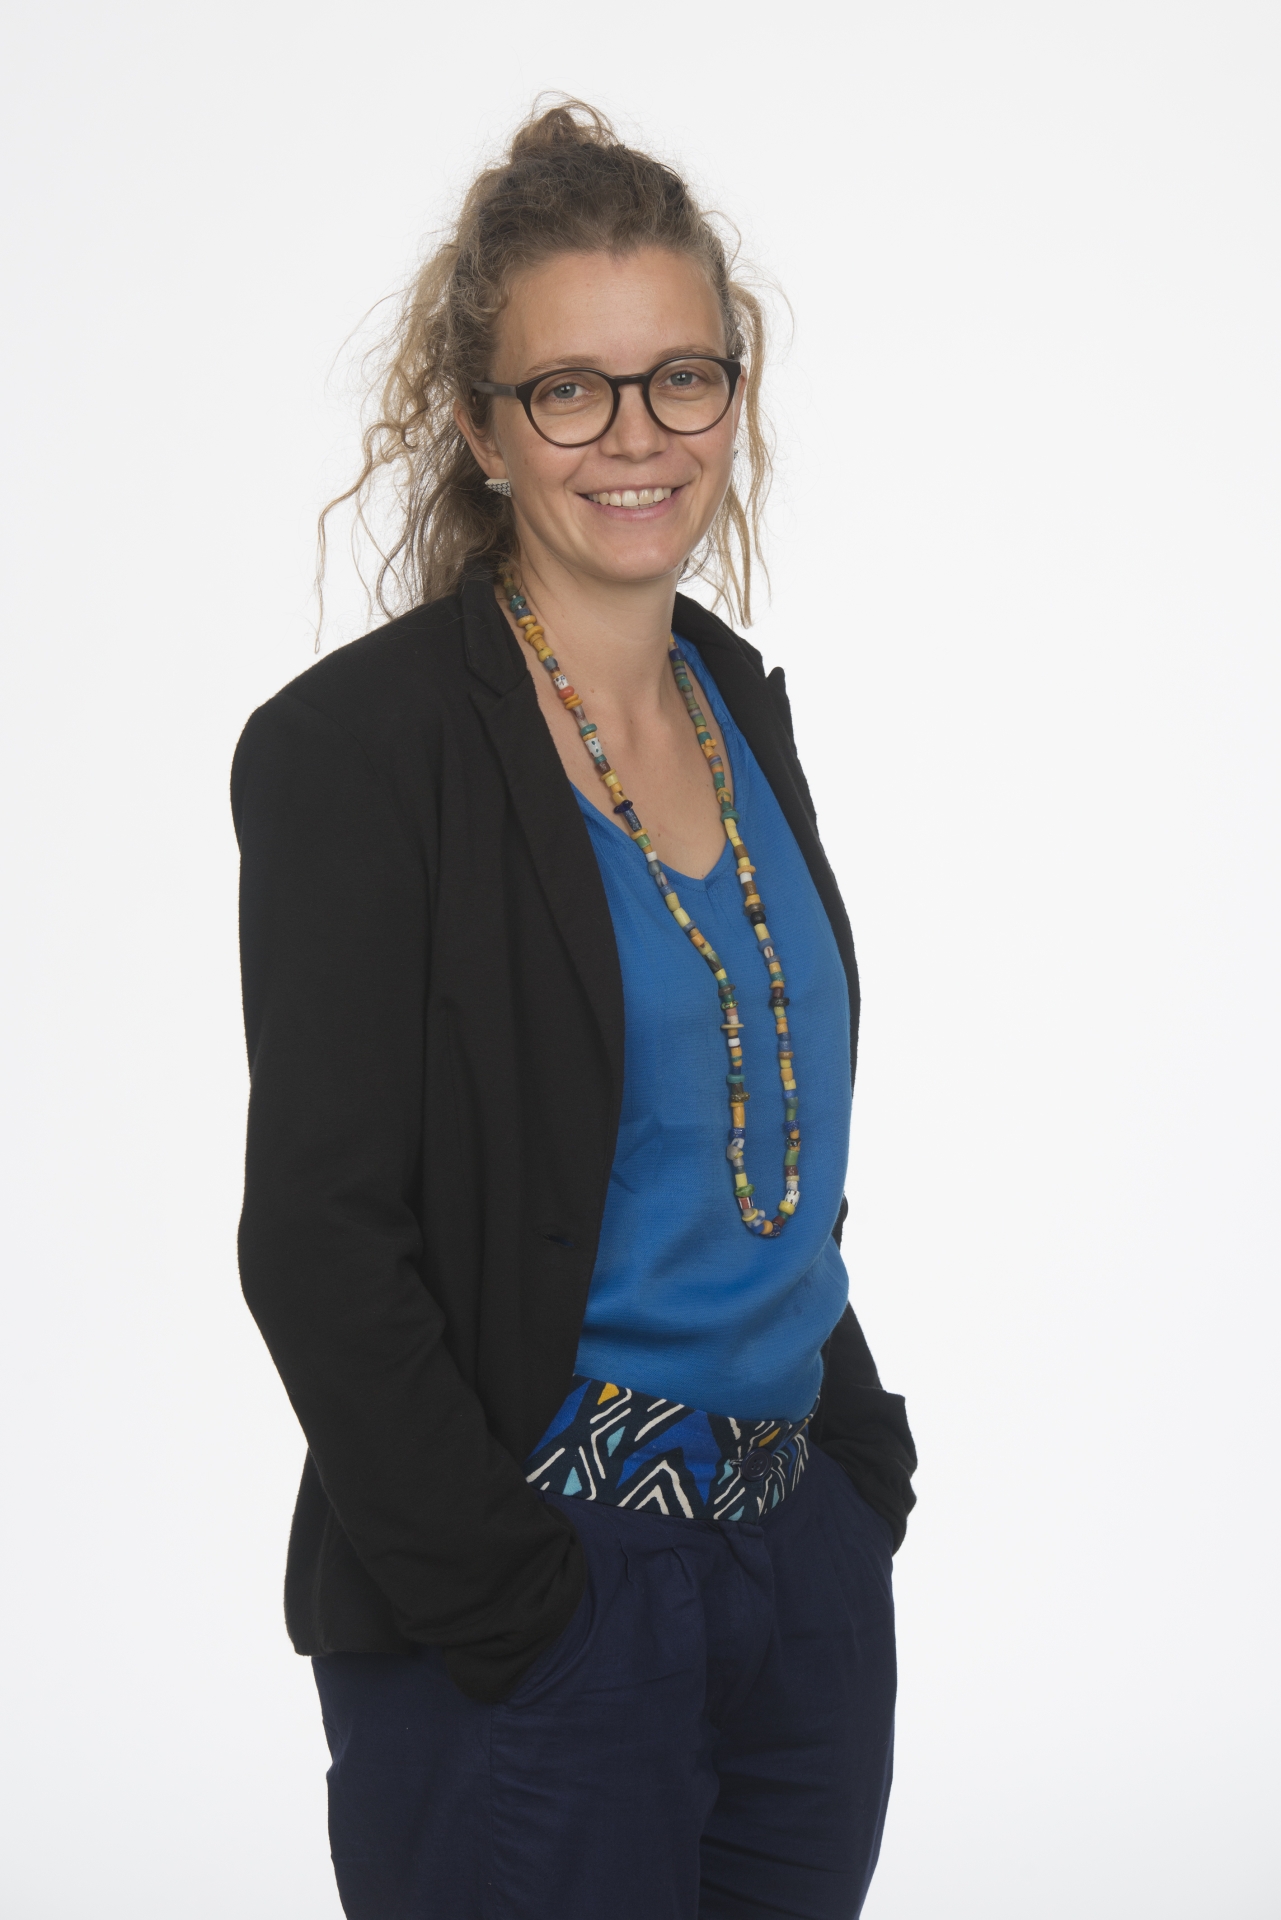 Morgane Rousseau a débuté son parcours professionnel à Neuchâtel, auprès de l’ONG IMBEWU, puis en tant que secrétaire générale de Latitude 21.